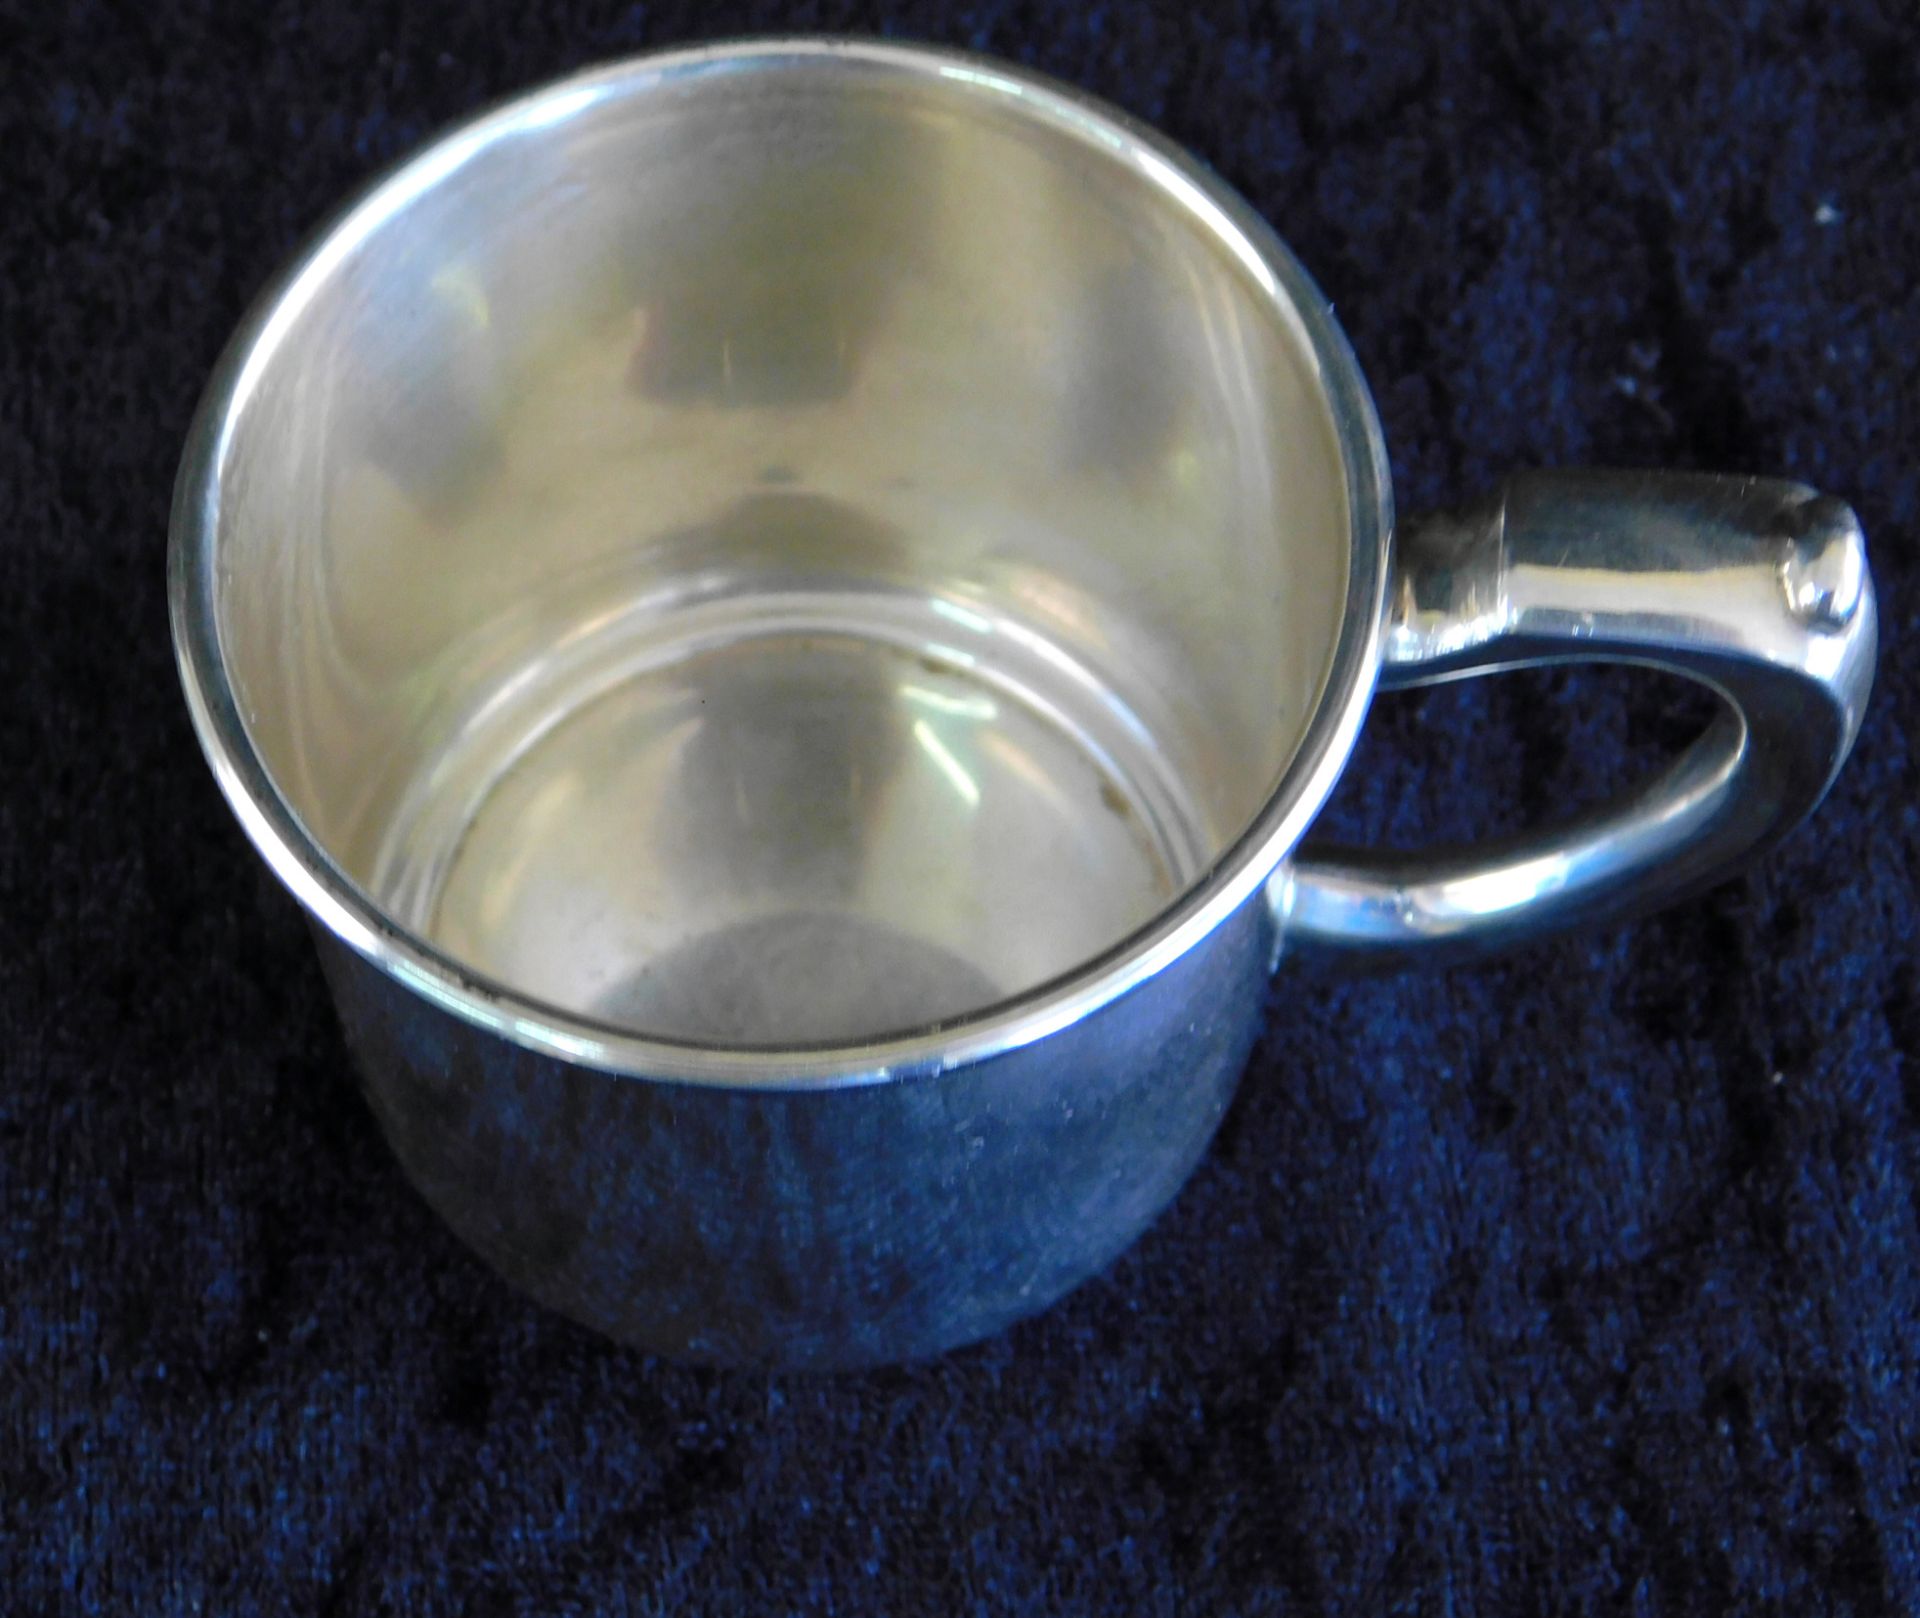 Tasse, Sterling Silber 925, gepunzt H.Gray co. inc., Nr 6409, Gewicht 68 g, Höhe 6 cm, Ø 7 cm, - Bild 3 aus 5